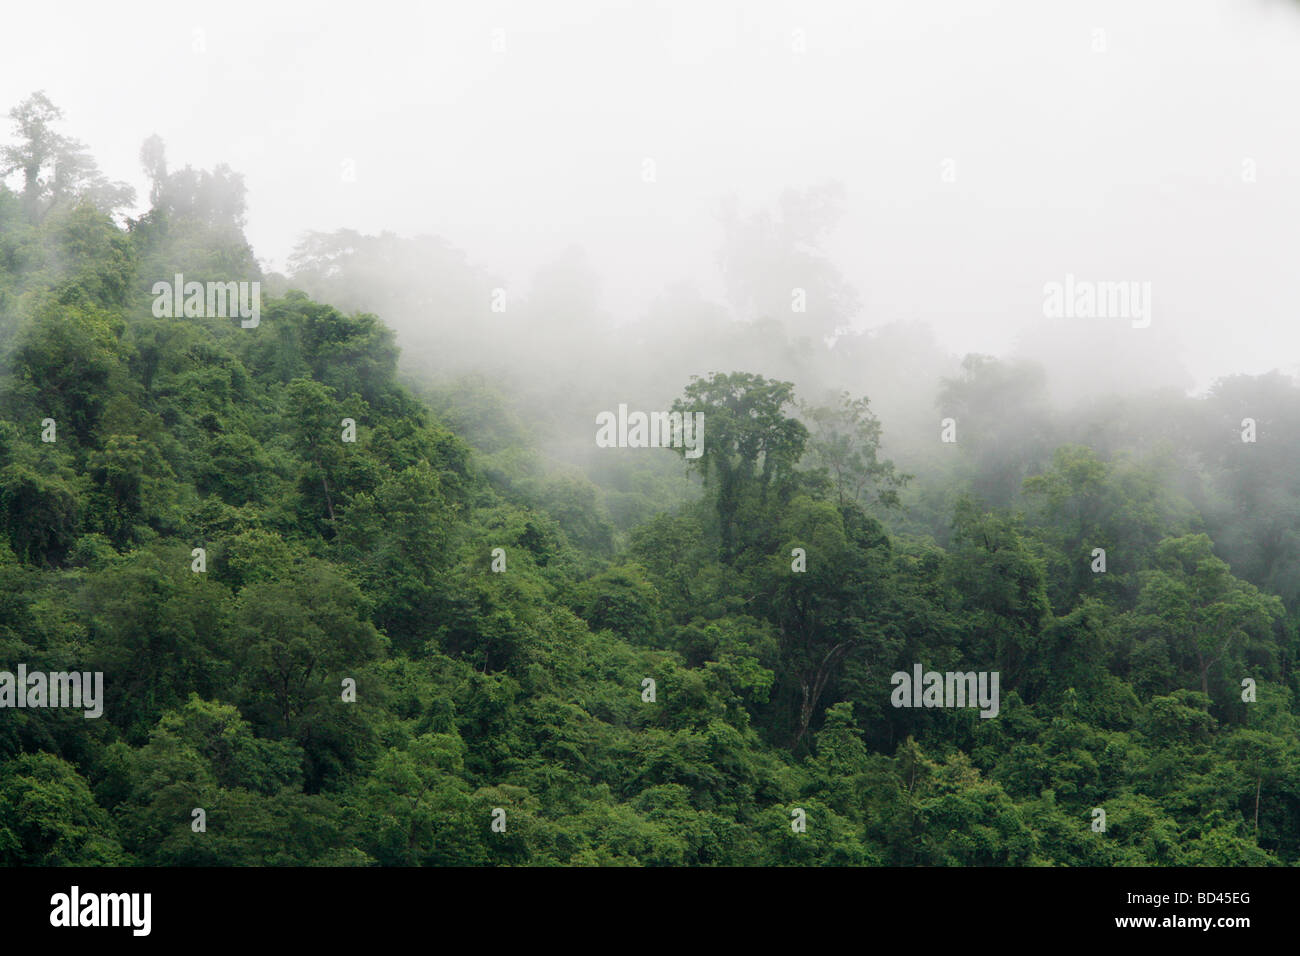 Luang Prabang, Laos, 2006 : la brume se lève au large des rives boisées du Mékong après de fortes pluies Banque D'Images